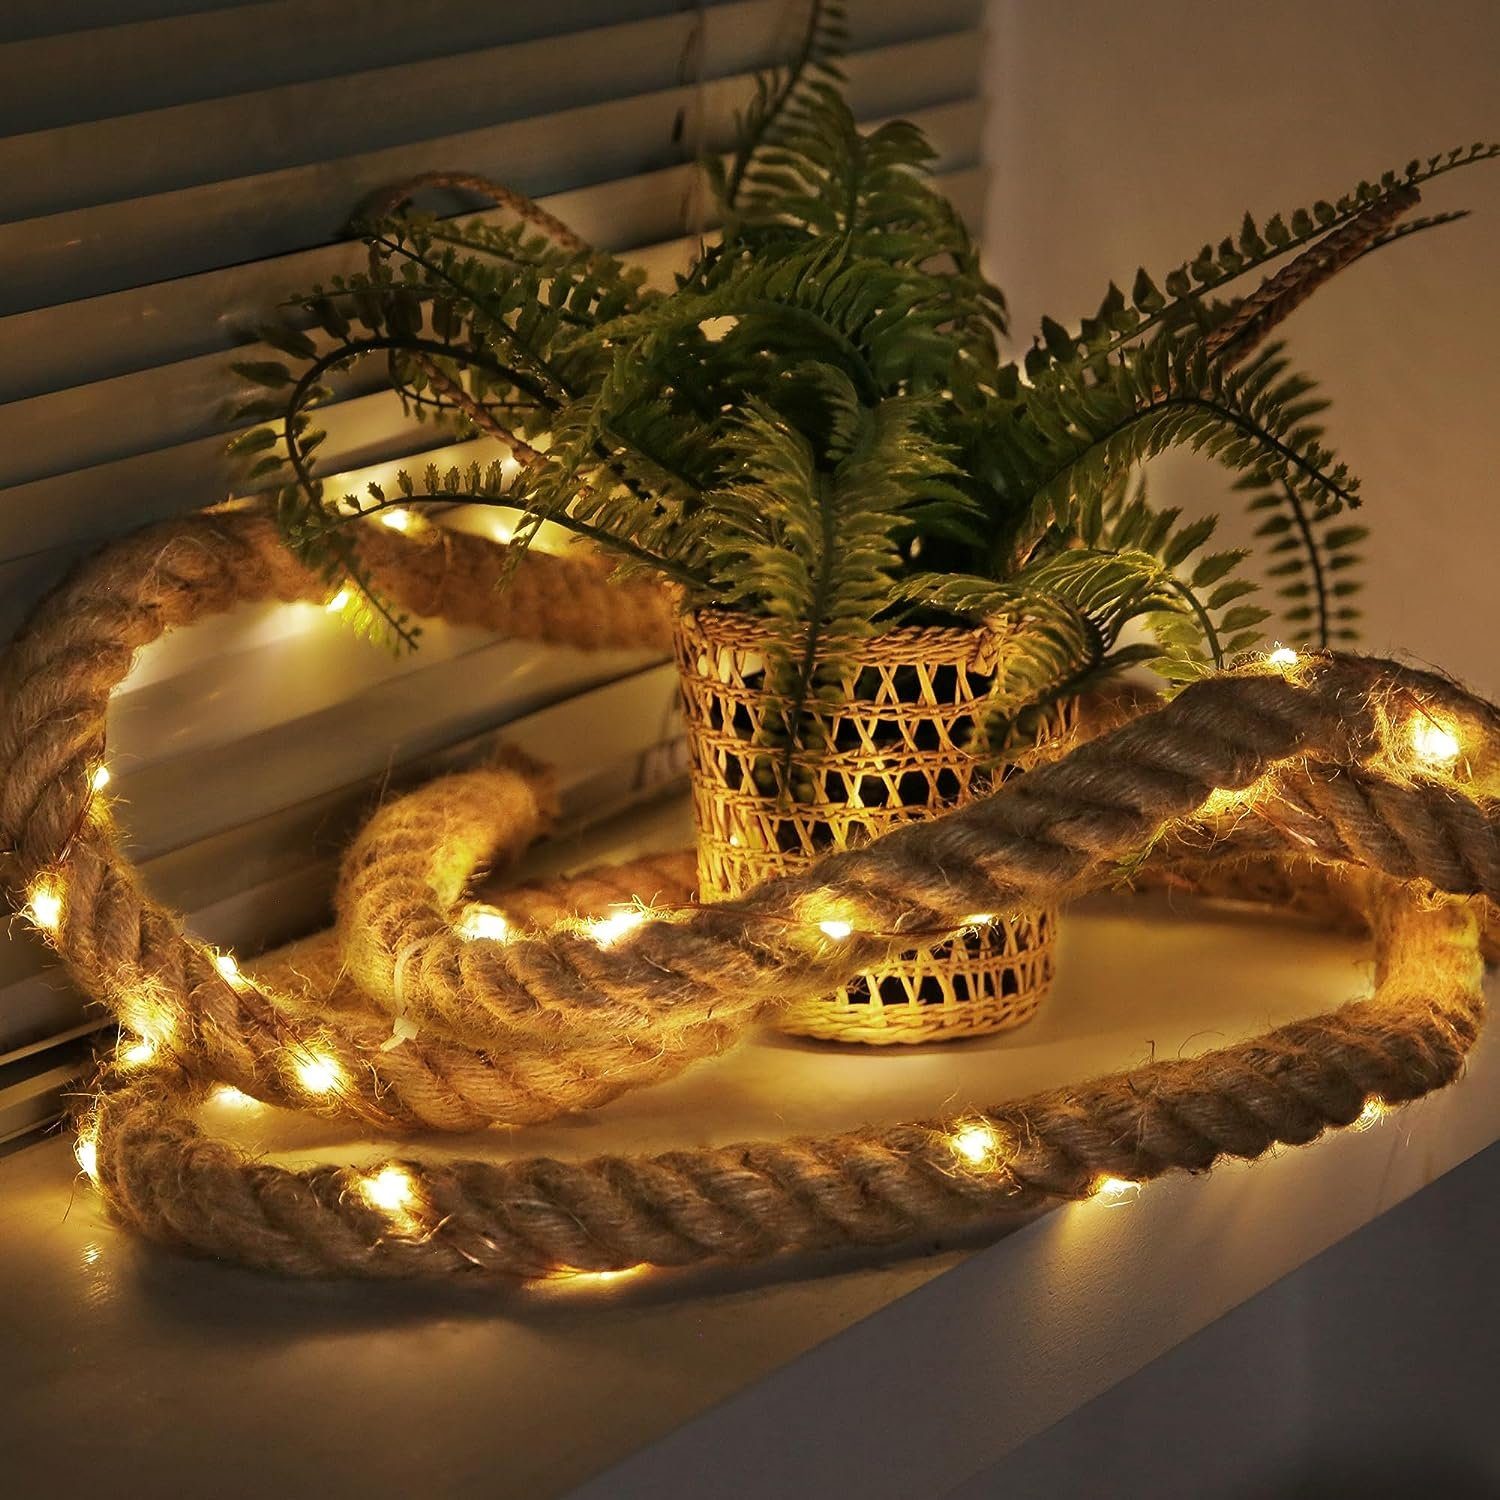 Ciskotu LED-Lichterkette Baumwollseil Lichterkette Seil 60 LED Lichterkette  Sommer Deko Meer,Weihnachten Beleuchtung für Deko Outdoor Garten Terrasse  Balkon